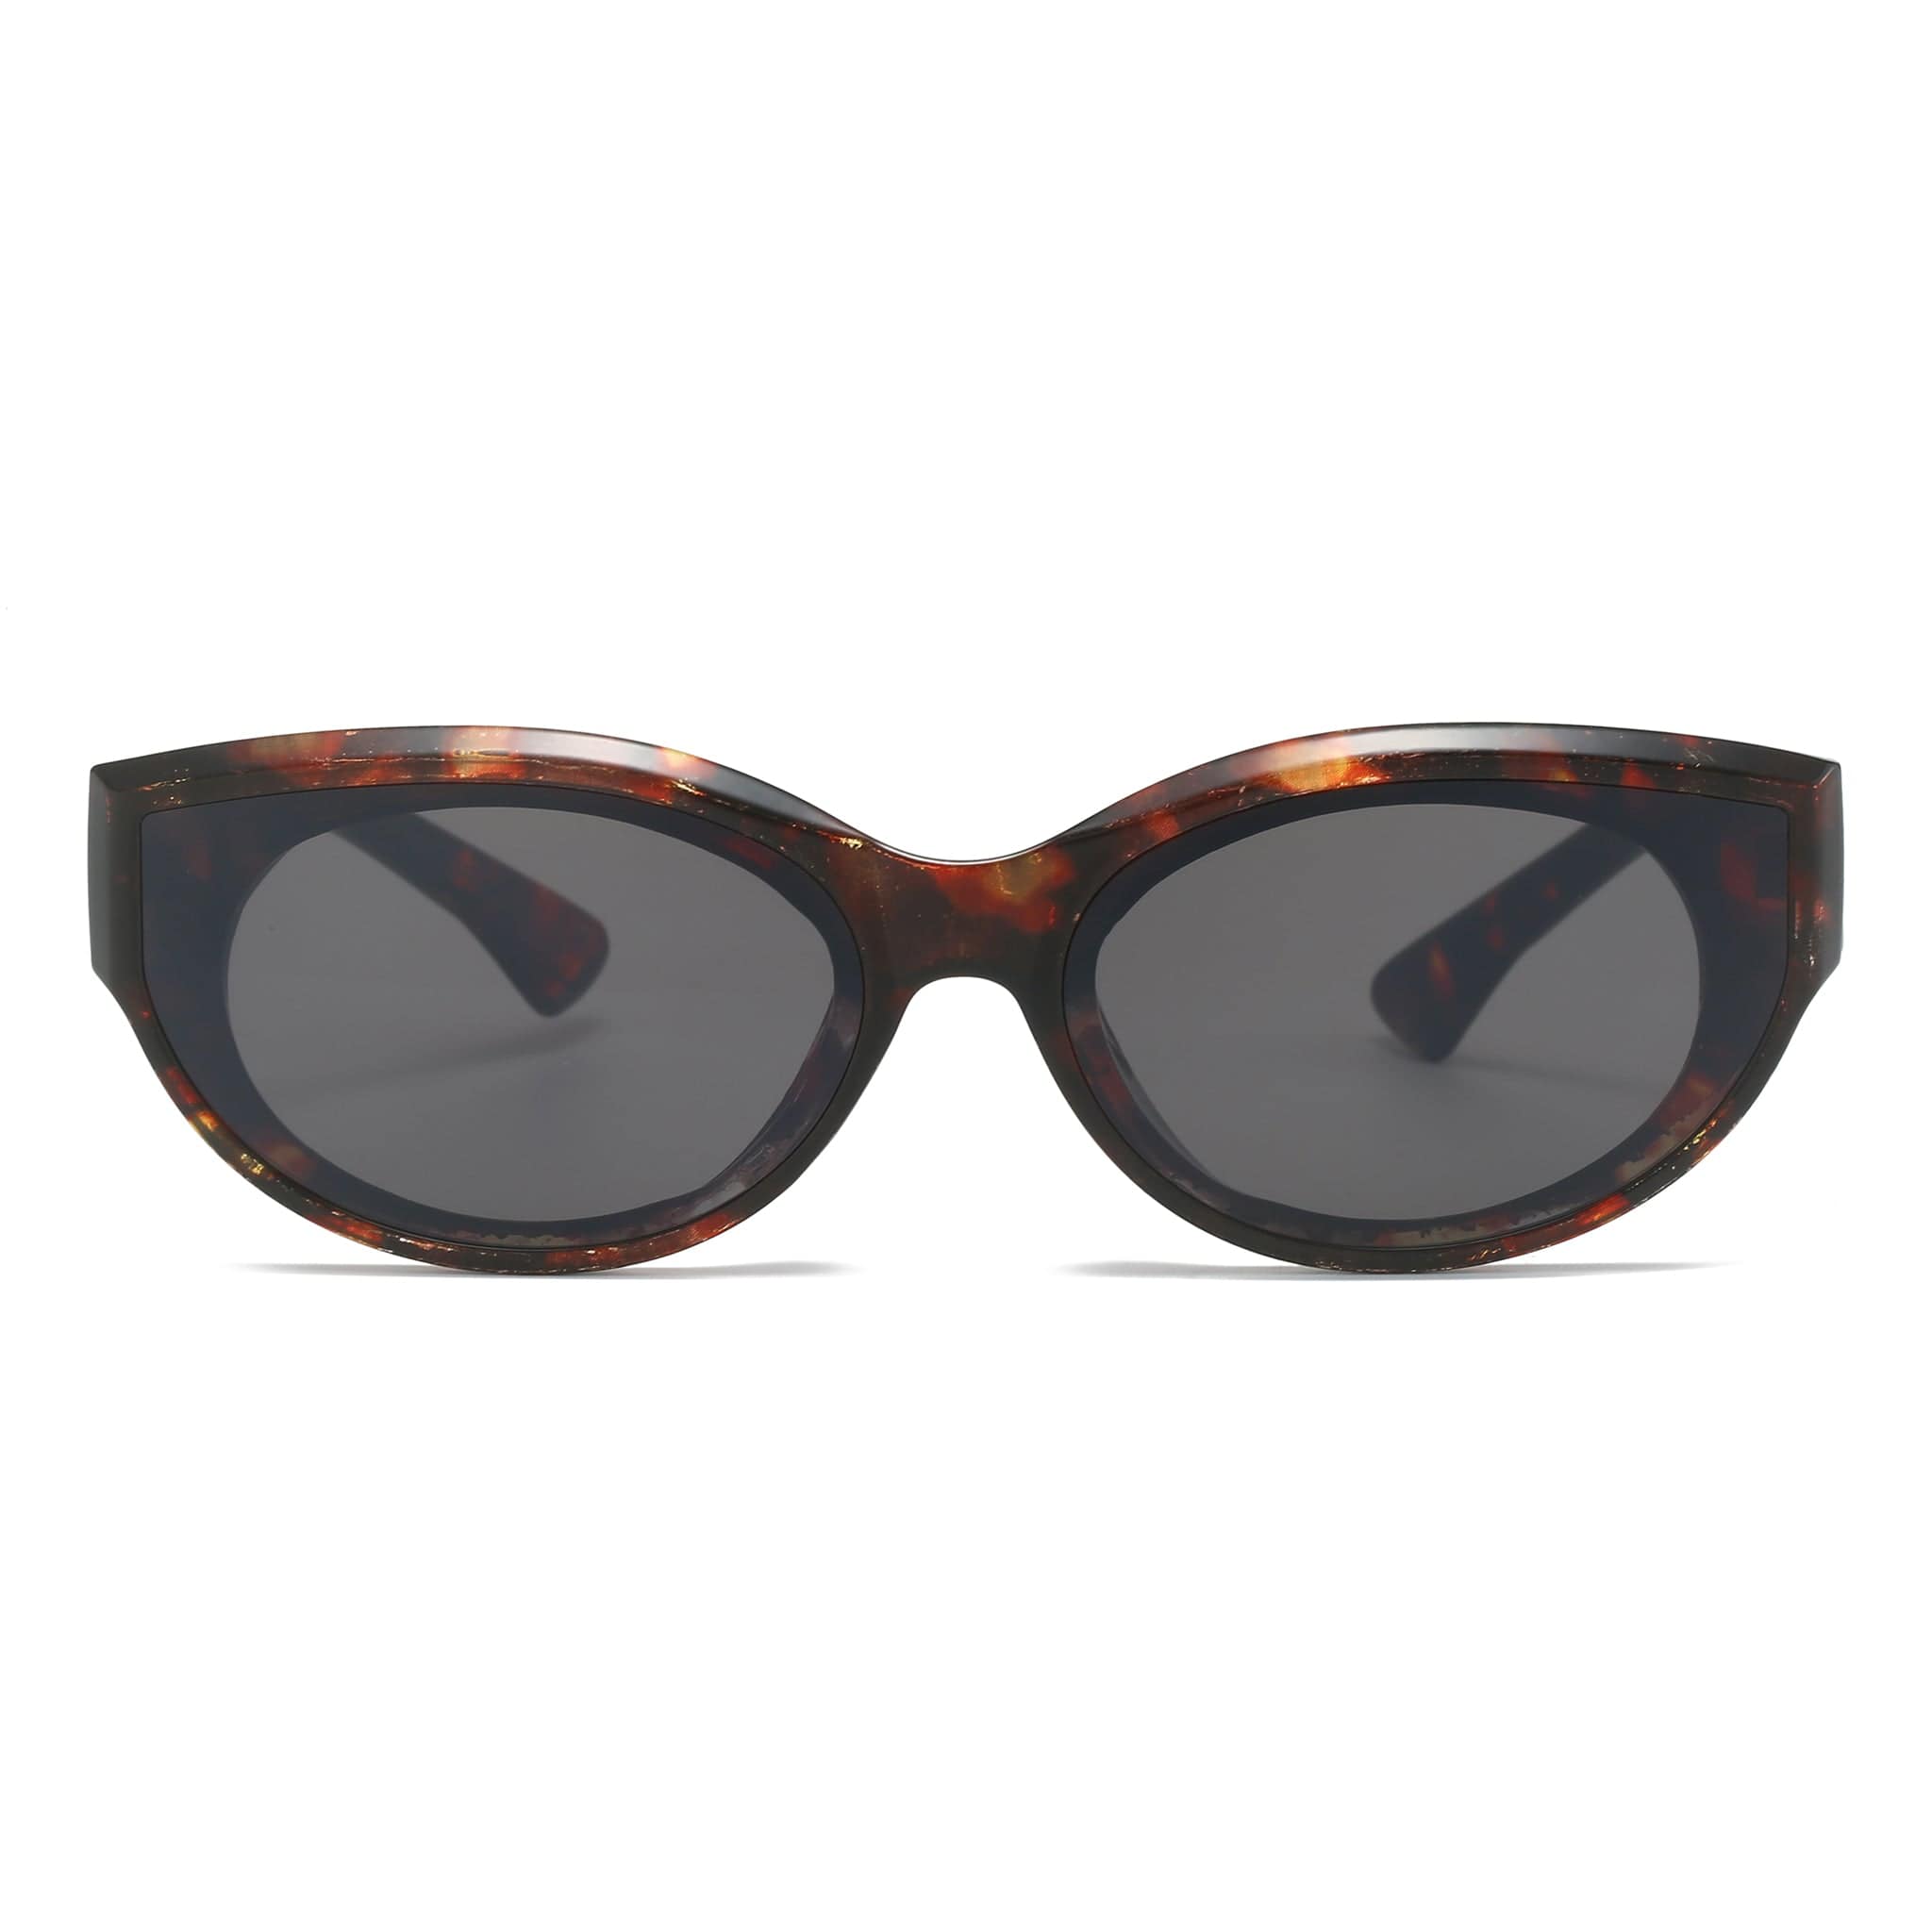 GIUSTIZIERI VECCHI Sunglasses Medium / Merigold Tortoise CosmicCat Uno